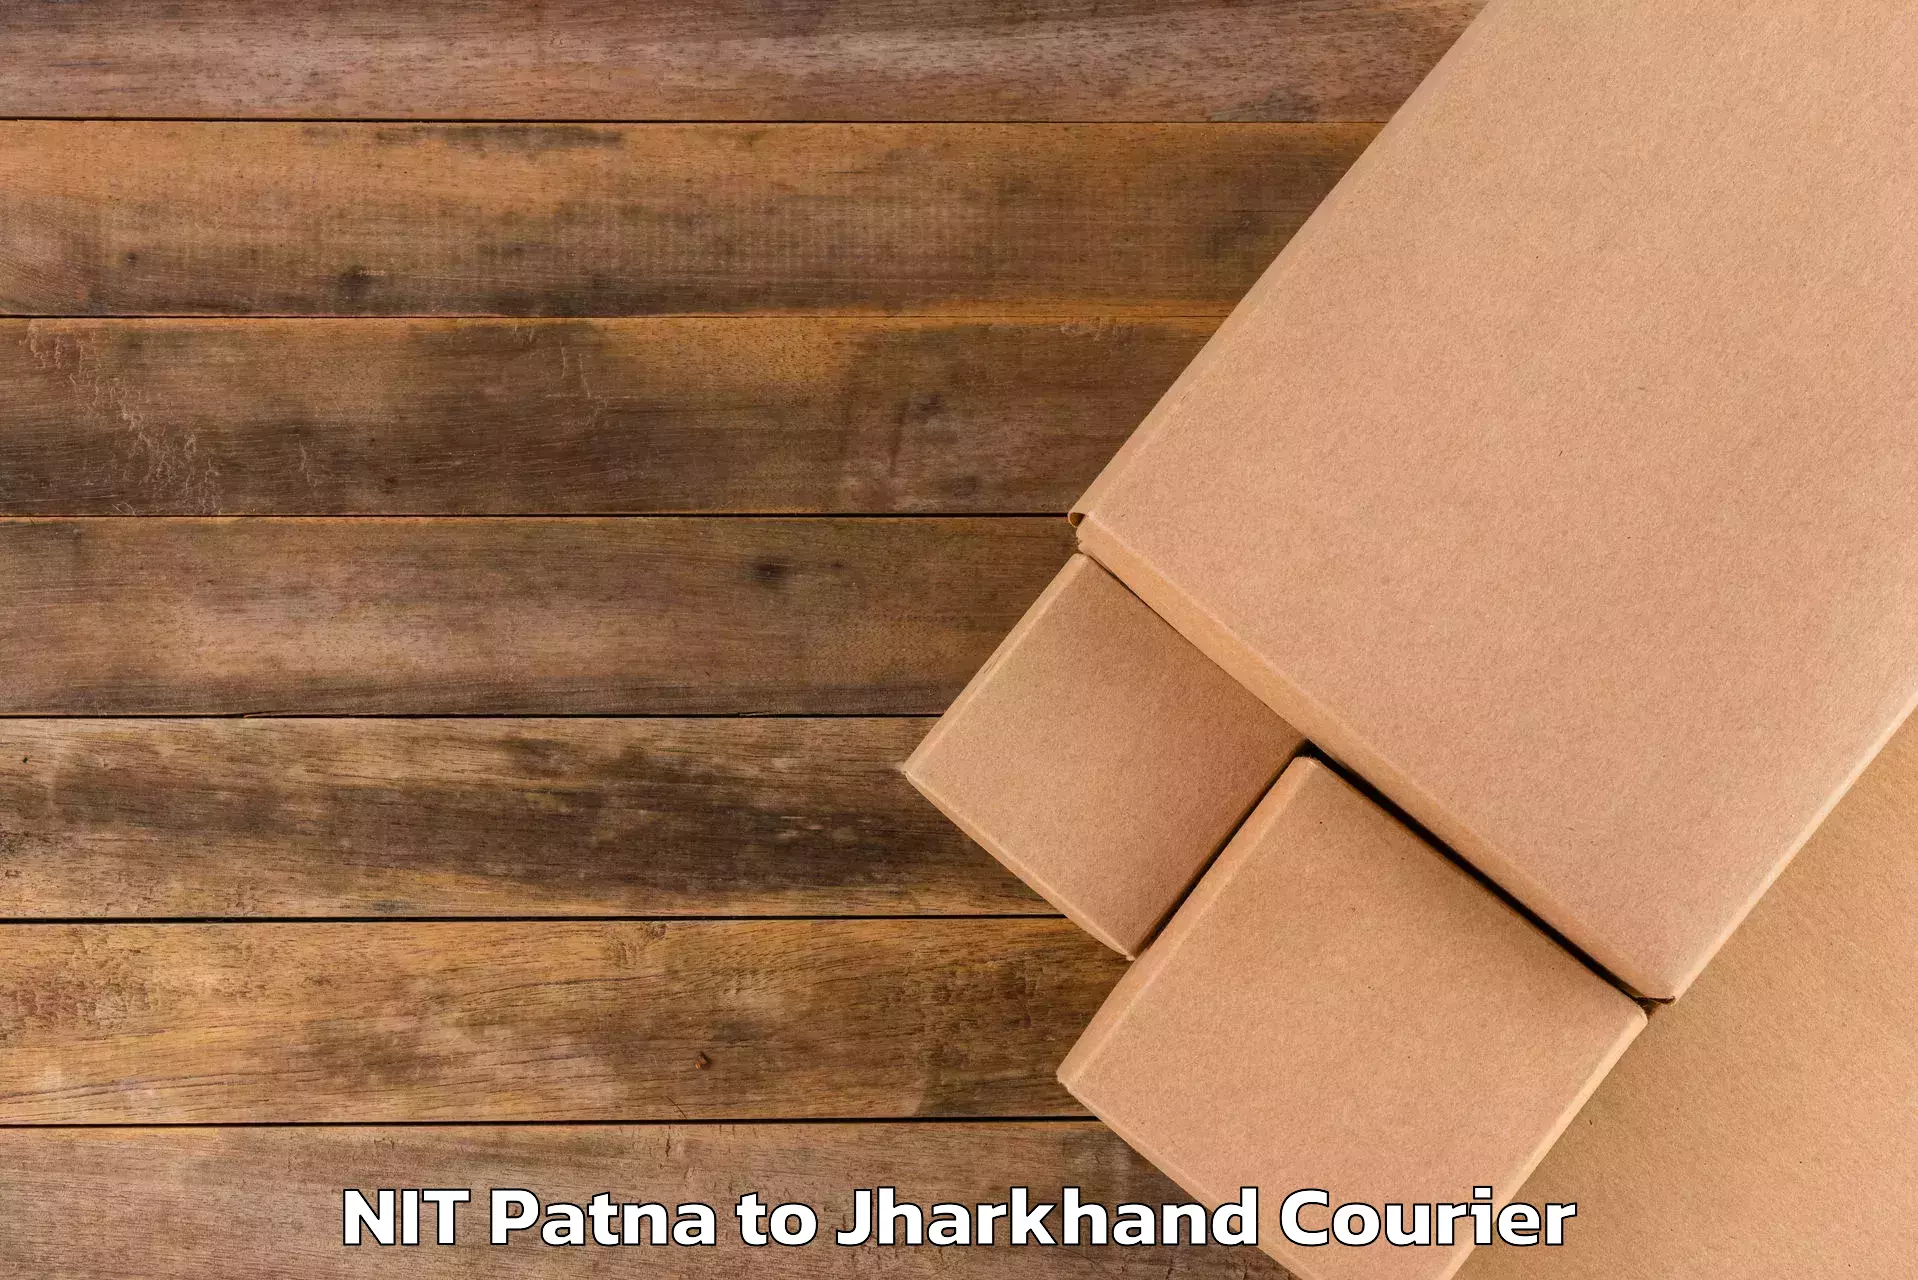 Digital baggage courier NIT Patna to Jamshedpur